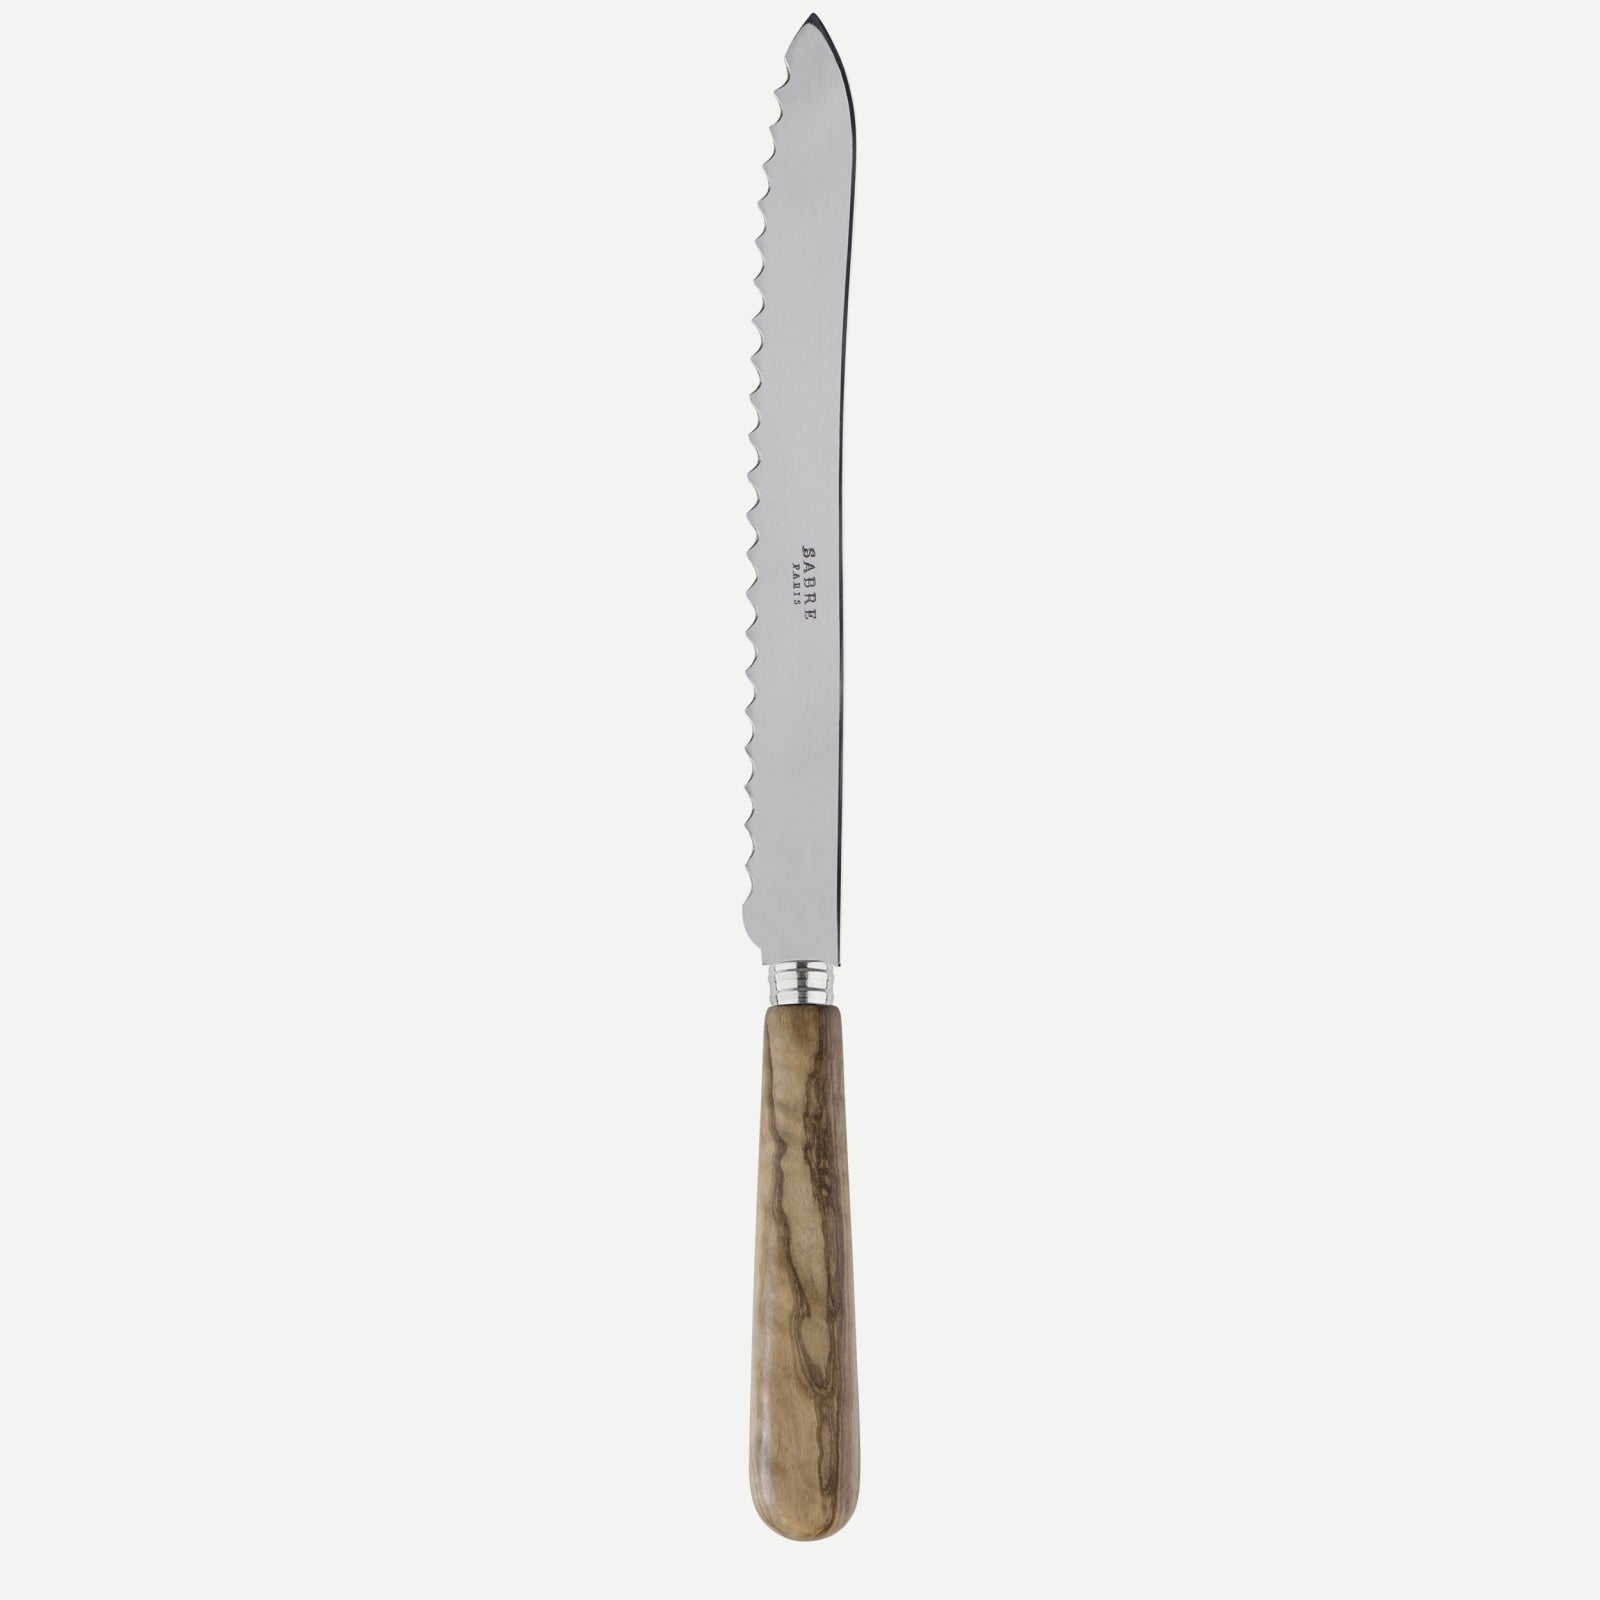 Bread knife - Lavandou - Olive tree wood